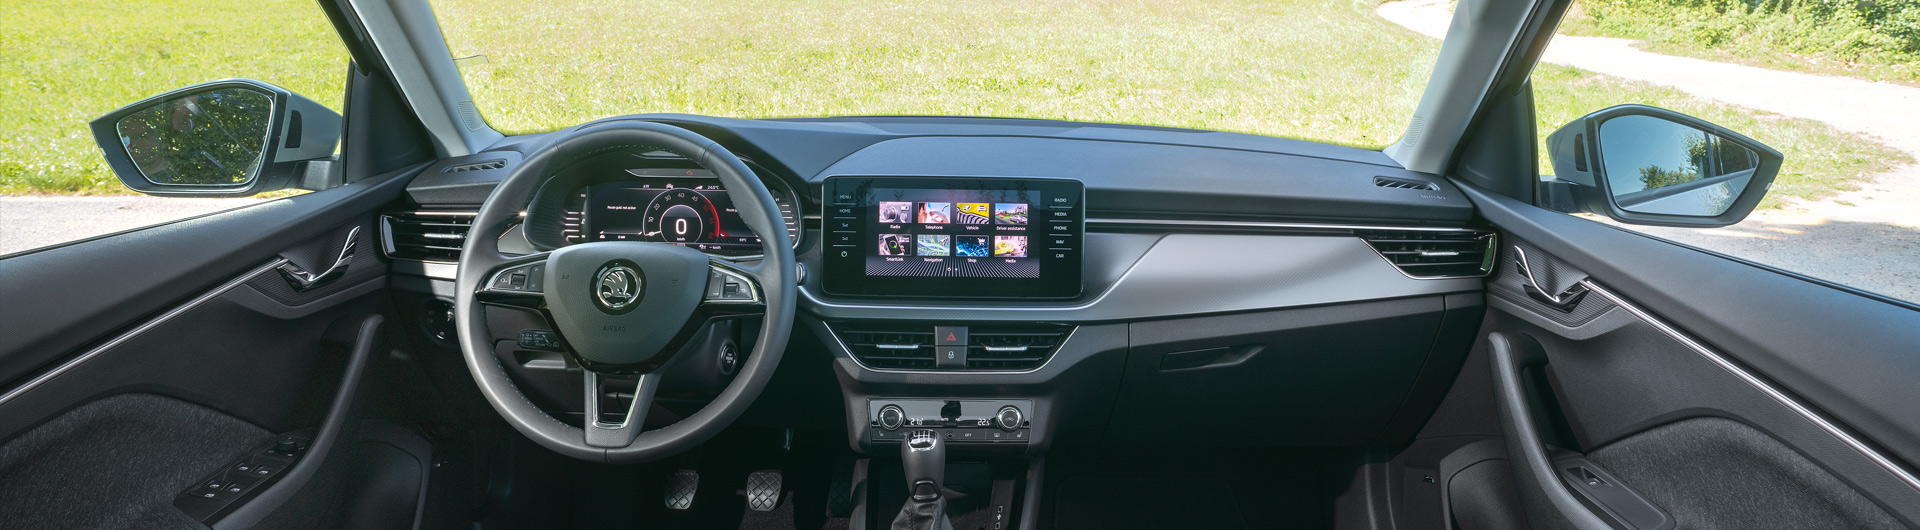 ŠKODA KAMIQ oferuje najnowsze technologie multimedialne w segmencie SUV